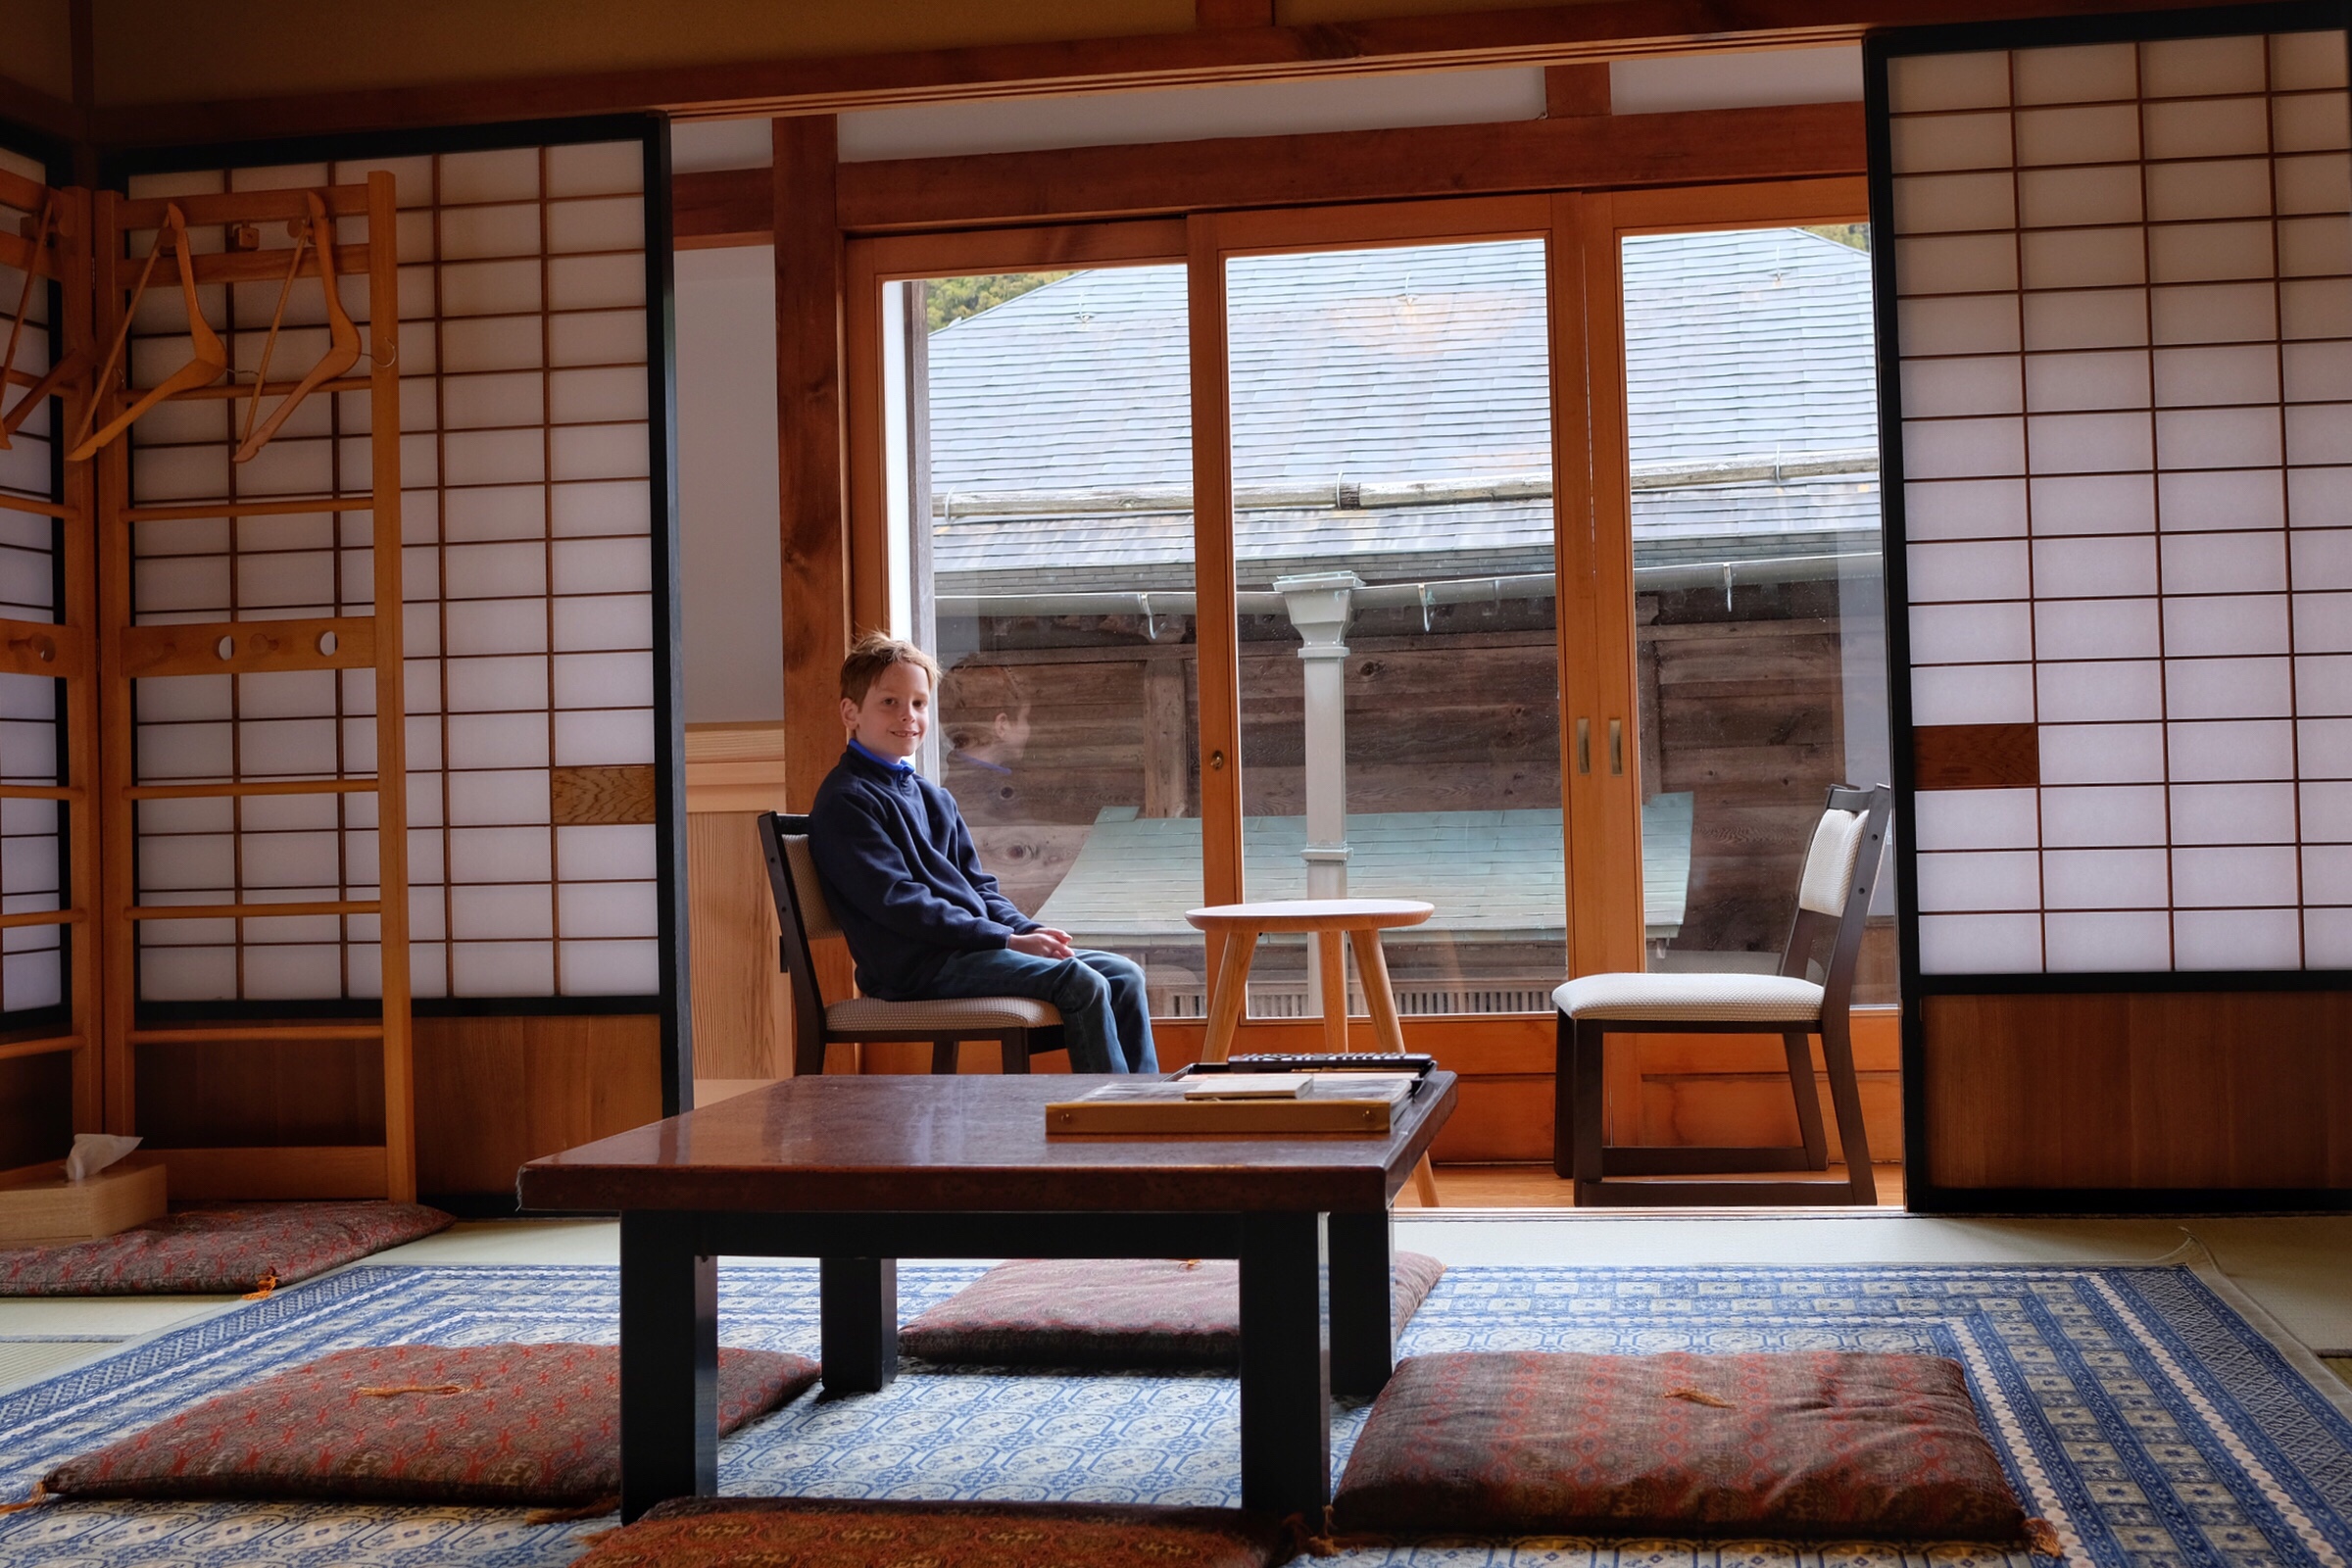 Japan - Koyasan - Ekoin Temple - Room